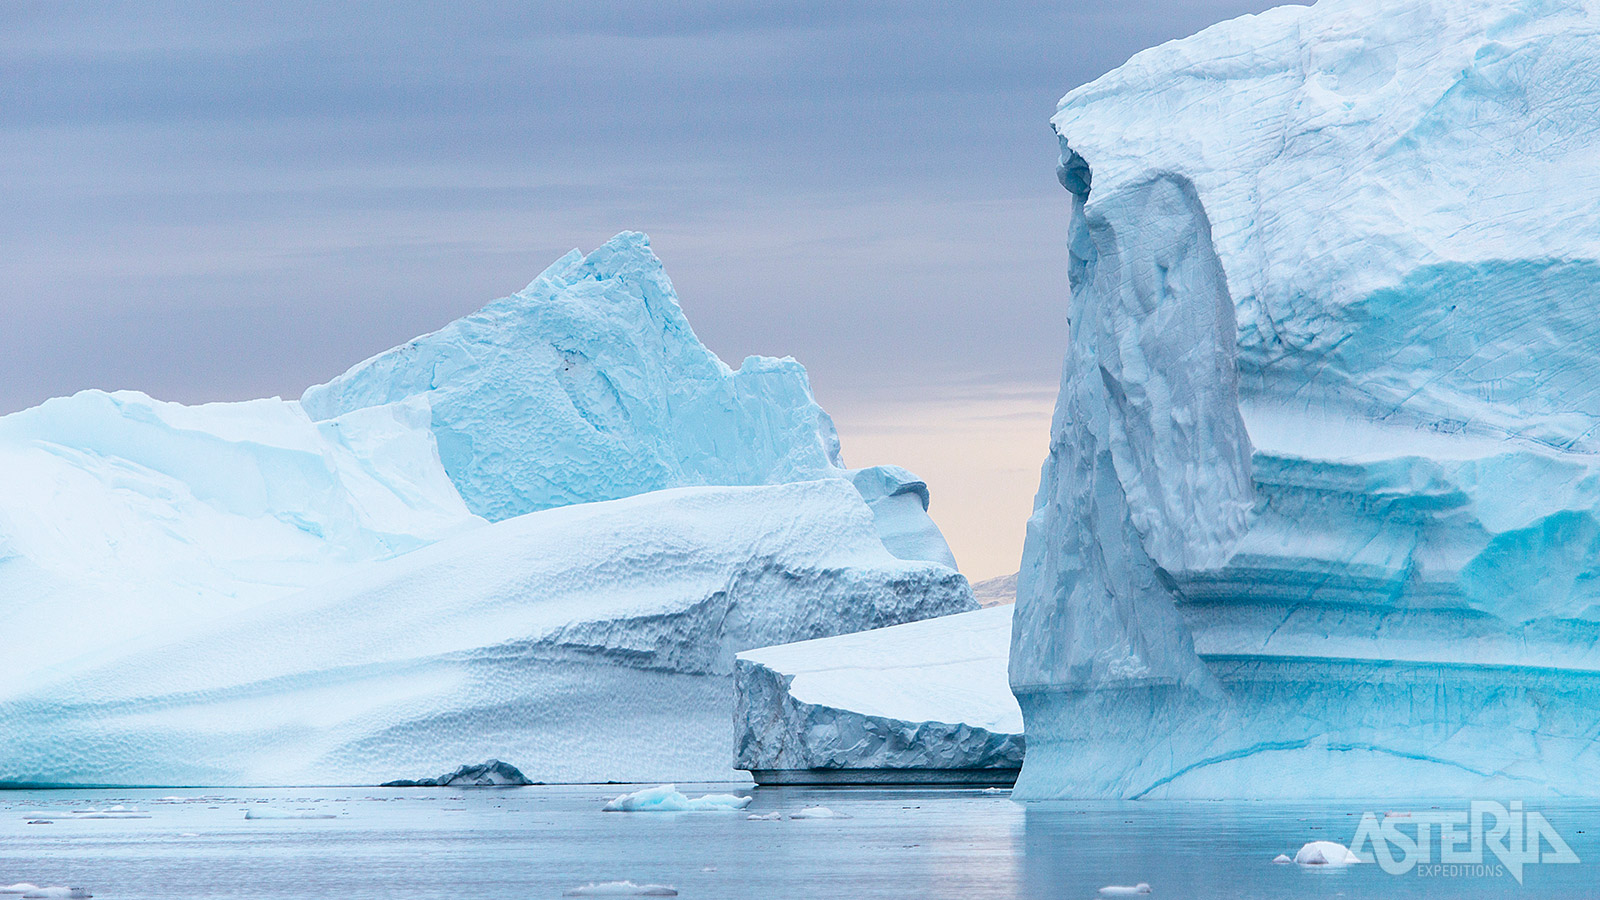 IJsbergen ontstaan hier door het afkalven van ijs van de vele gletsjers die de Groenlandse ijskap telt